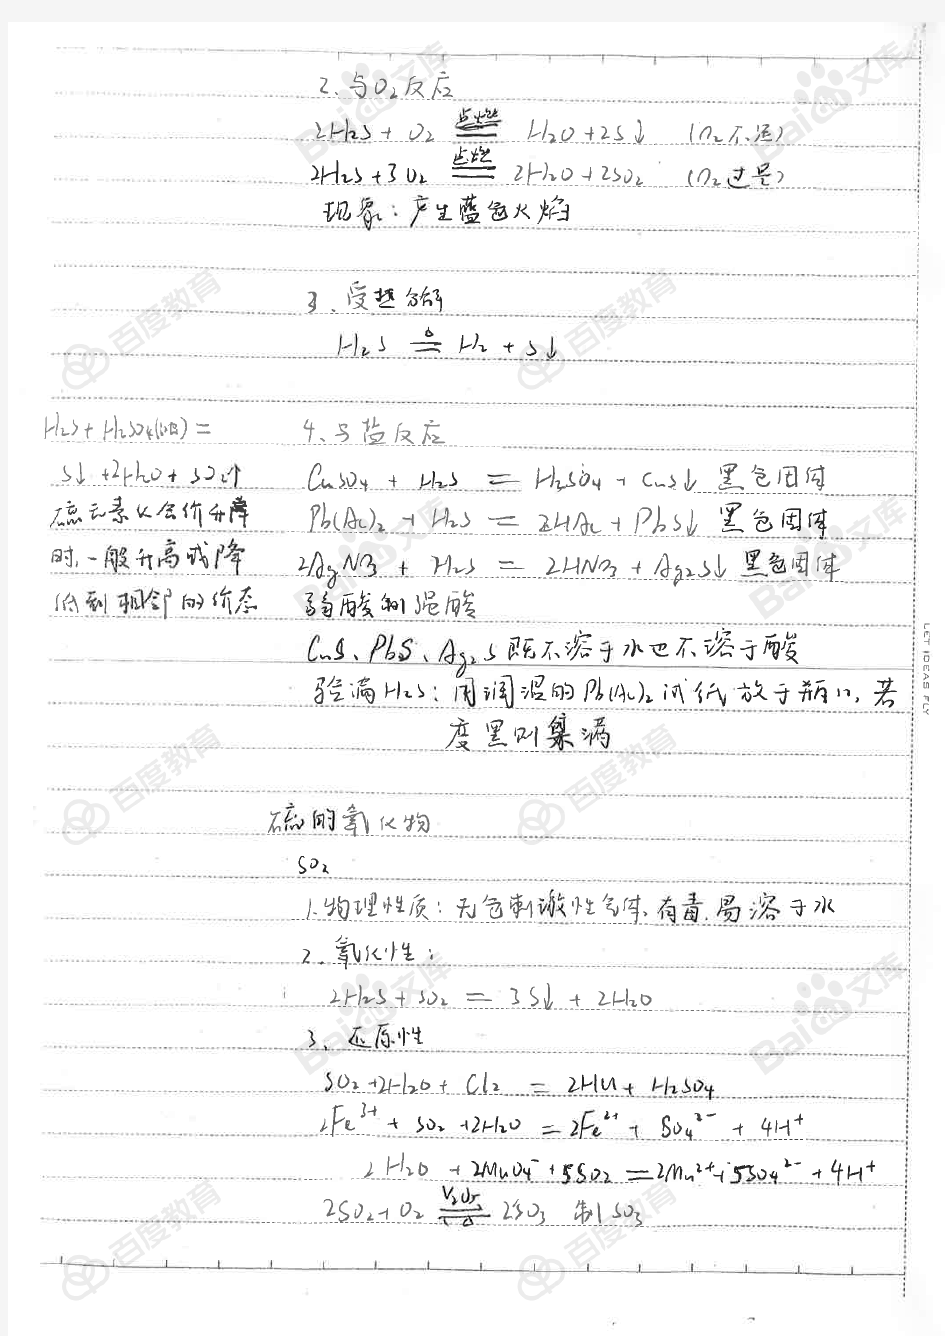 9硫及其化合物_高中化学笔记_2017状元笔记_贵州贵阳一中理科学霸